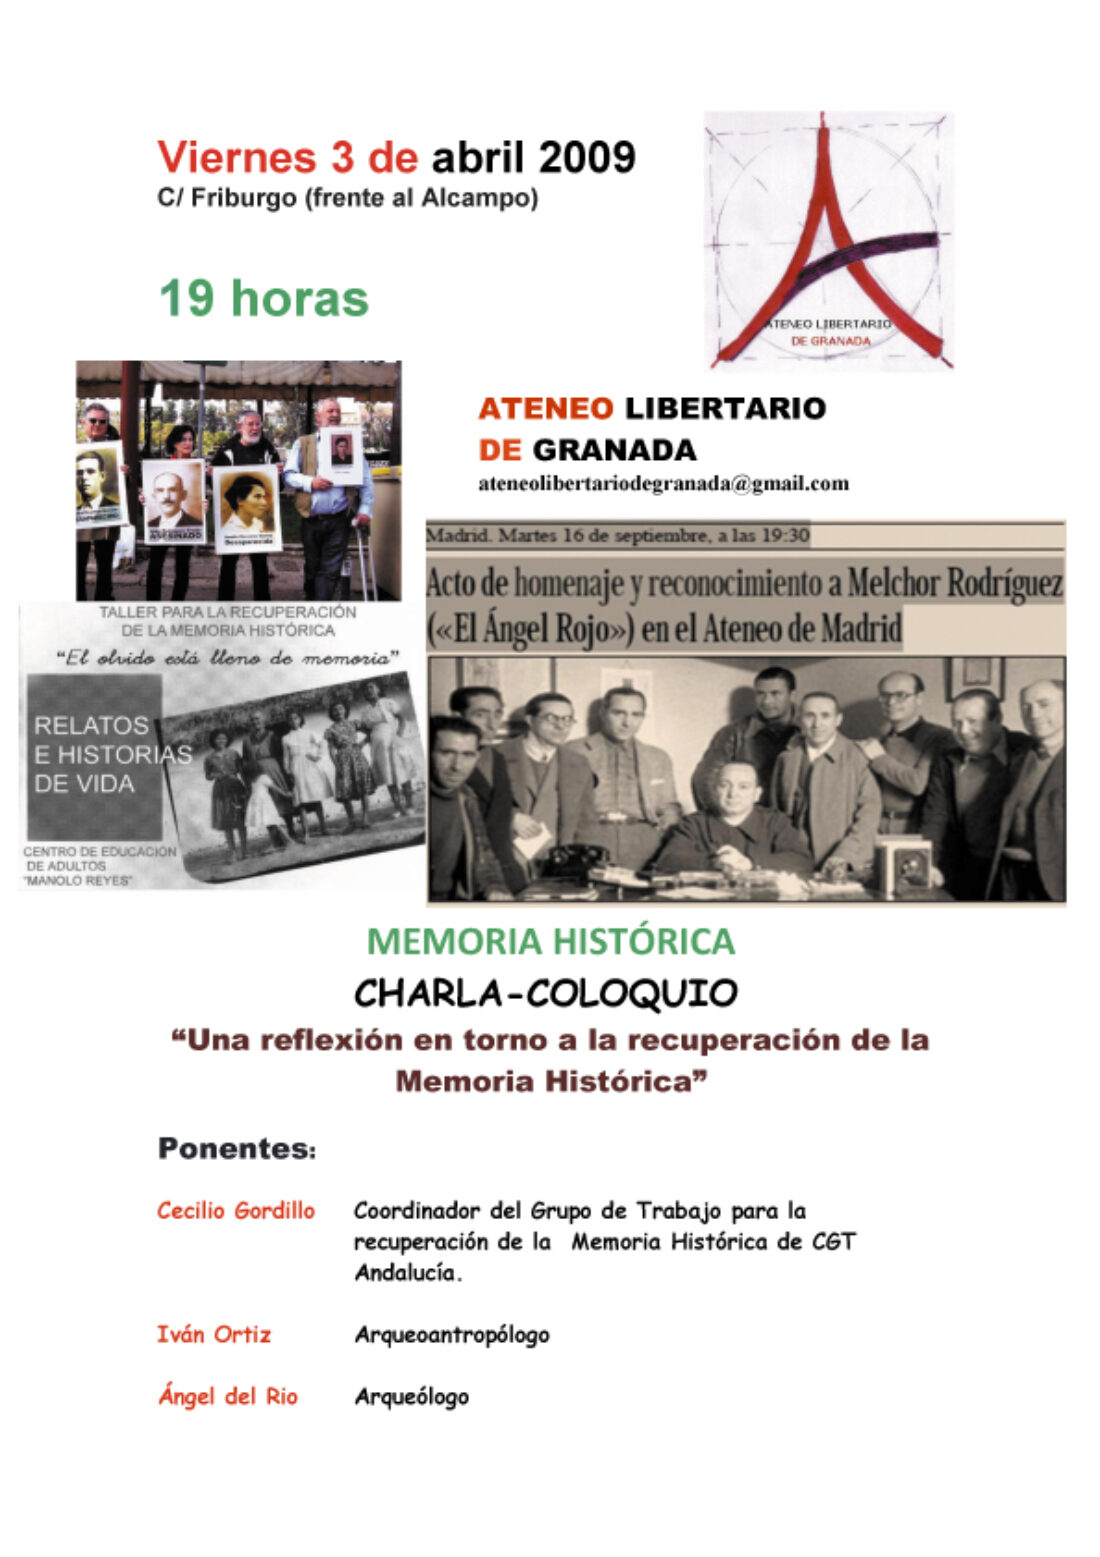 Ateneo Libertario de Granada : charla-coloquio «Una reflexión en torno a la recuperación de la memoria histórica»